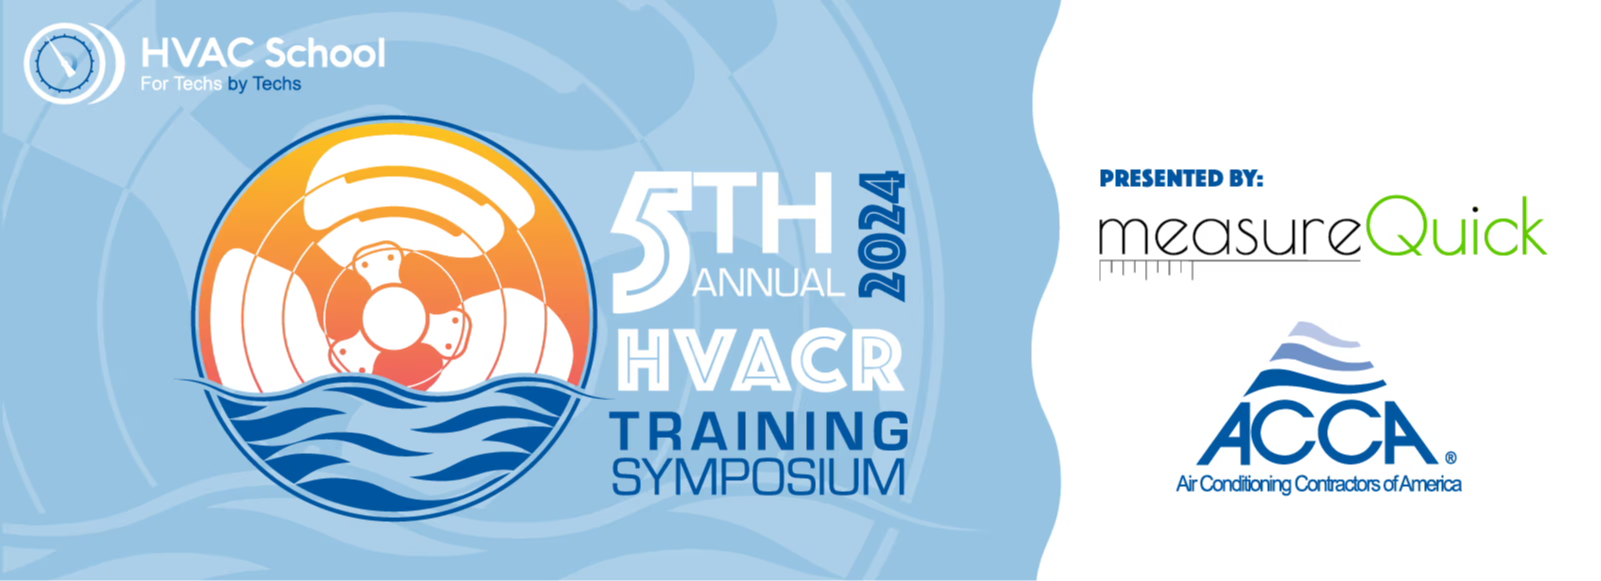 HVACR symposium